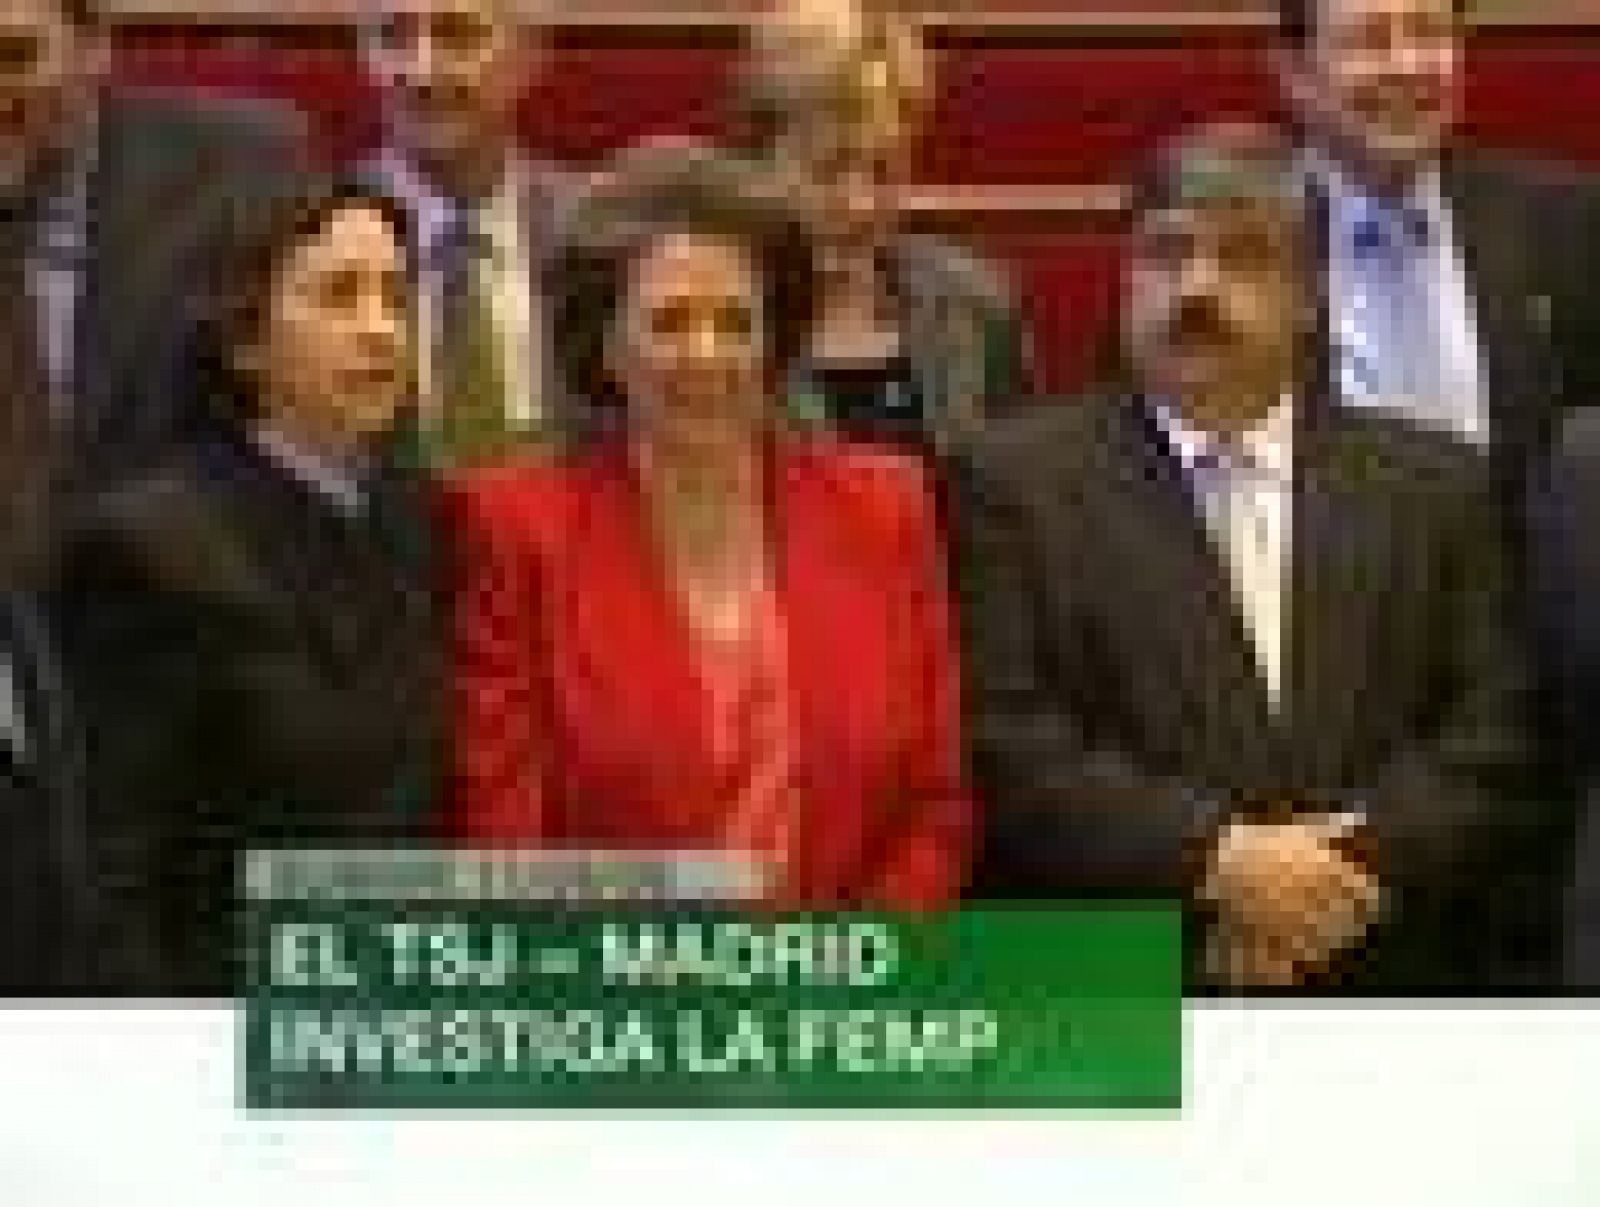 L'informatiu - Comunitat Valenciana: L'informatiu Comunitat Valenciana - 11/08/09 | RTVE Play